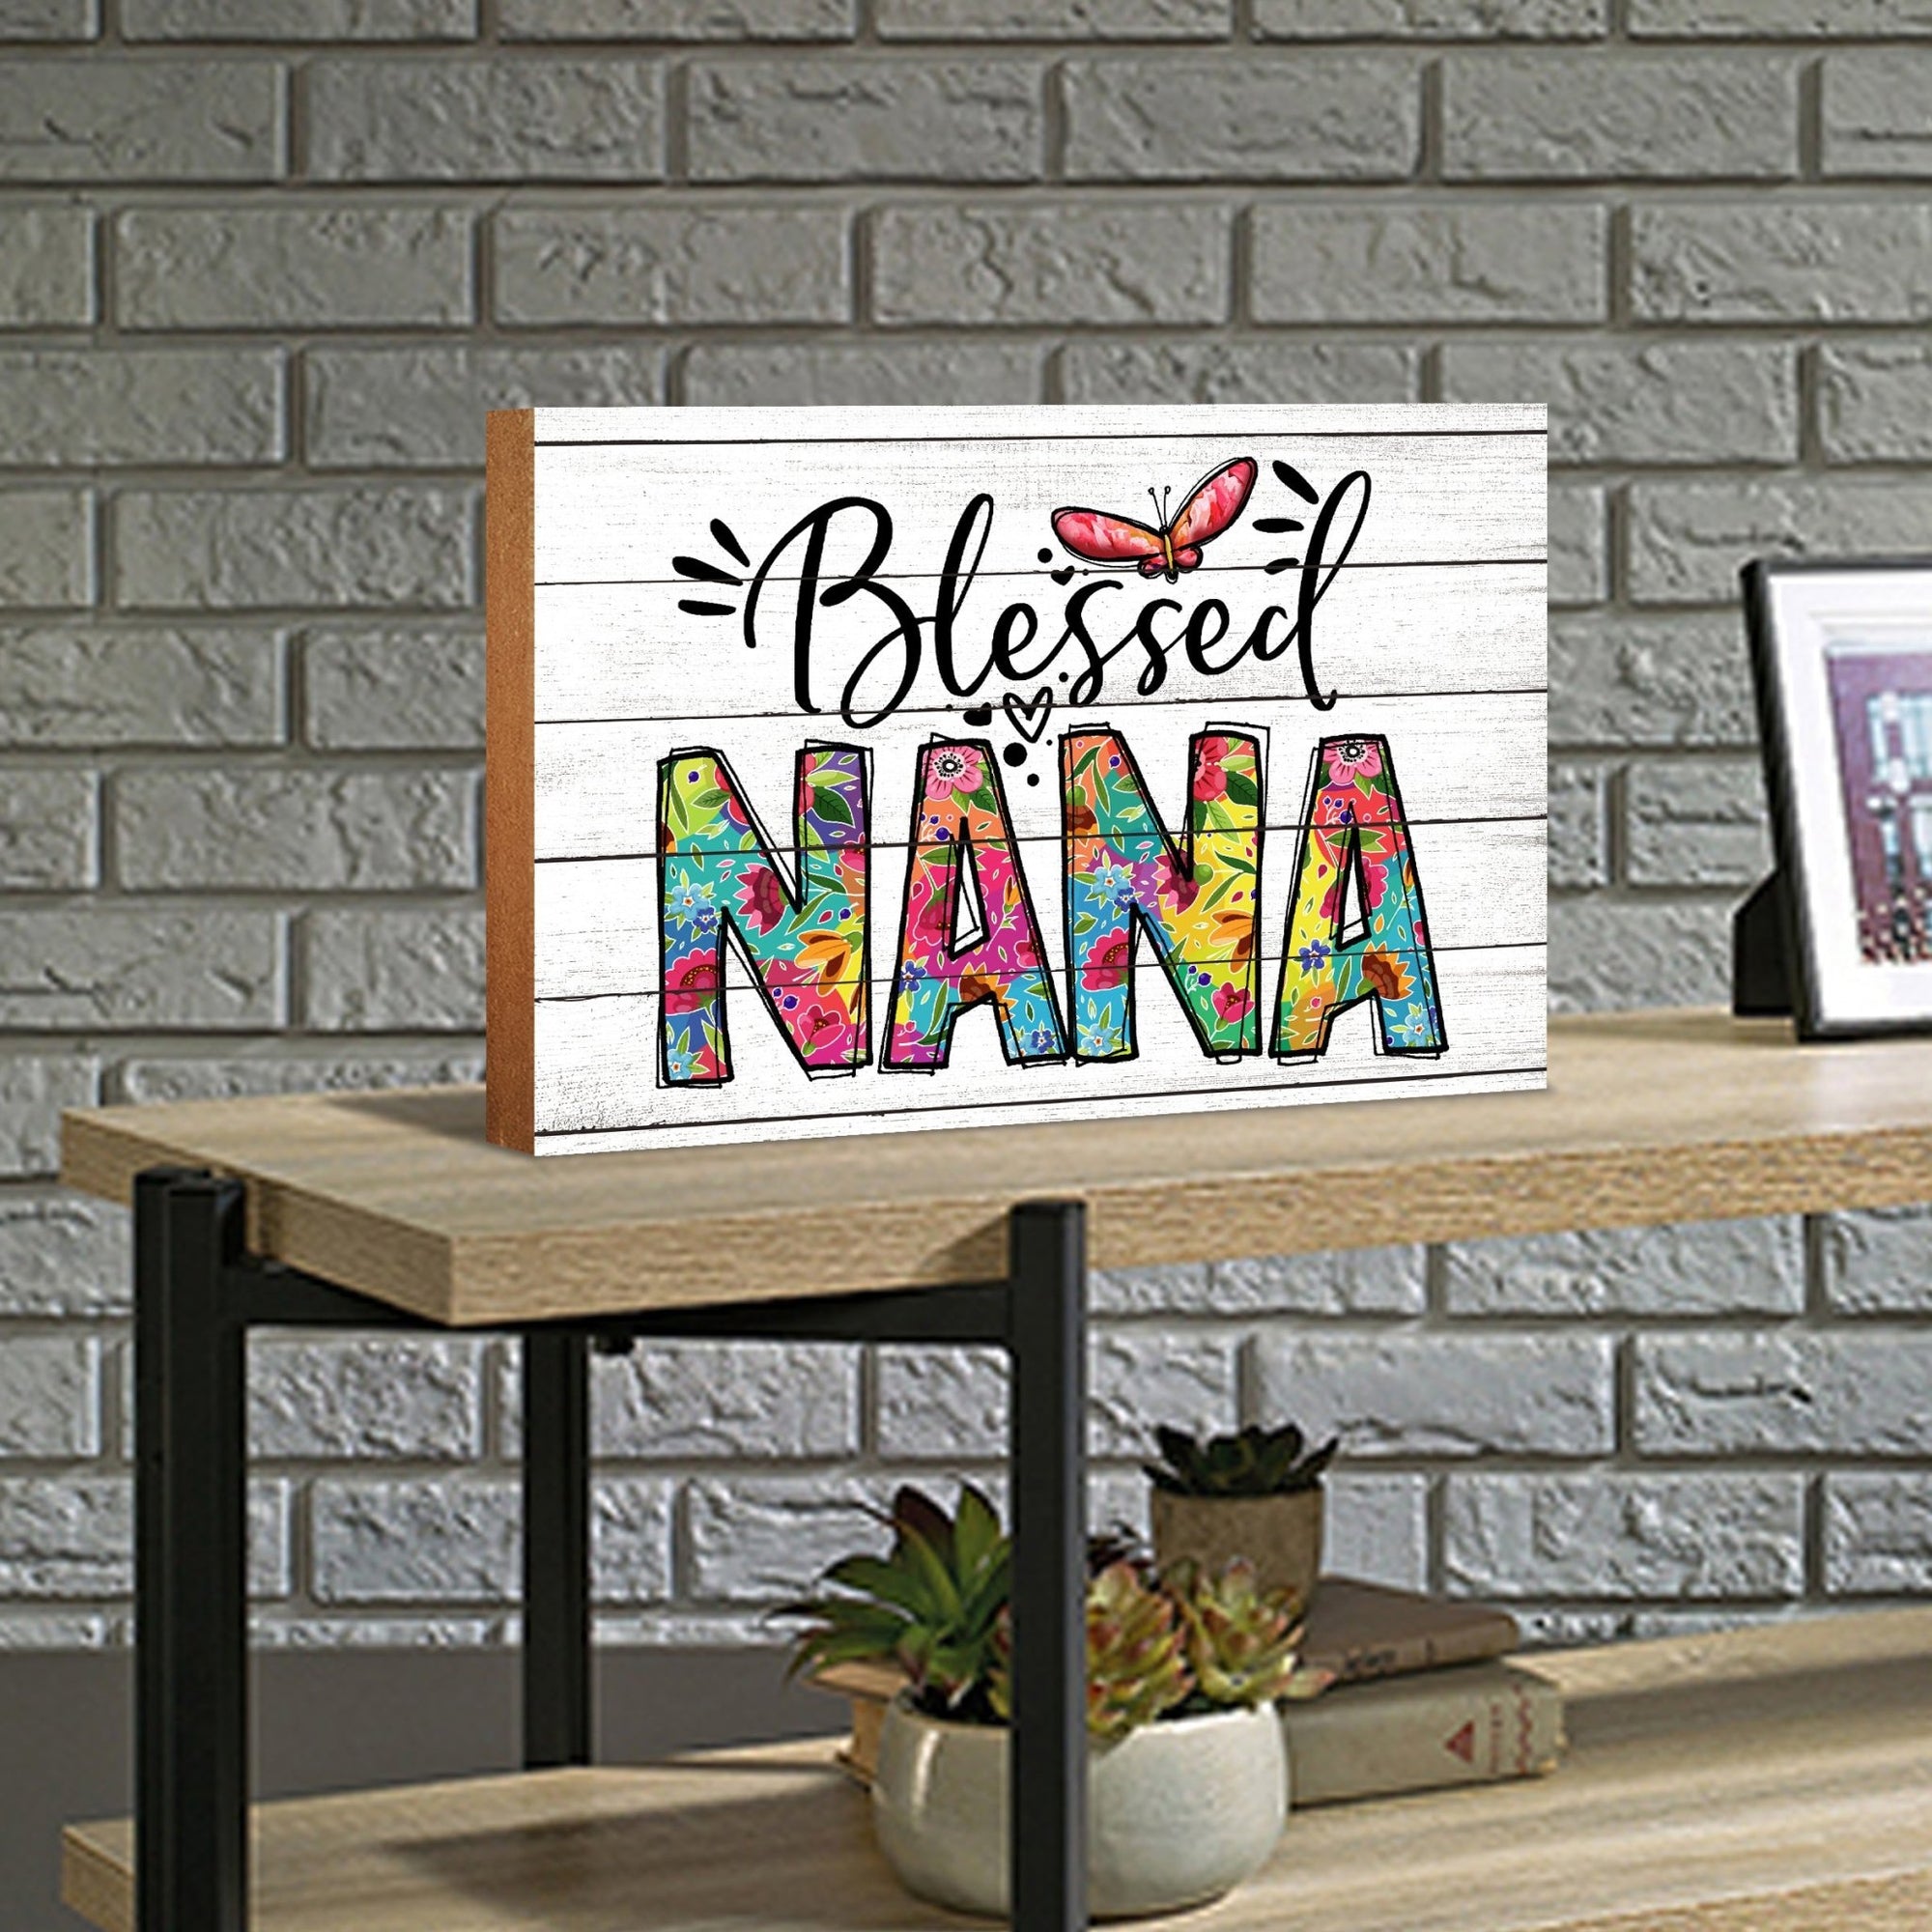 Modern-Inspired White Wooden Graffiti Art Shelf Sitter Gift Idea & Home Décor - Blessed Nana - LifeSong Milestones